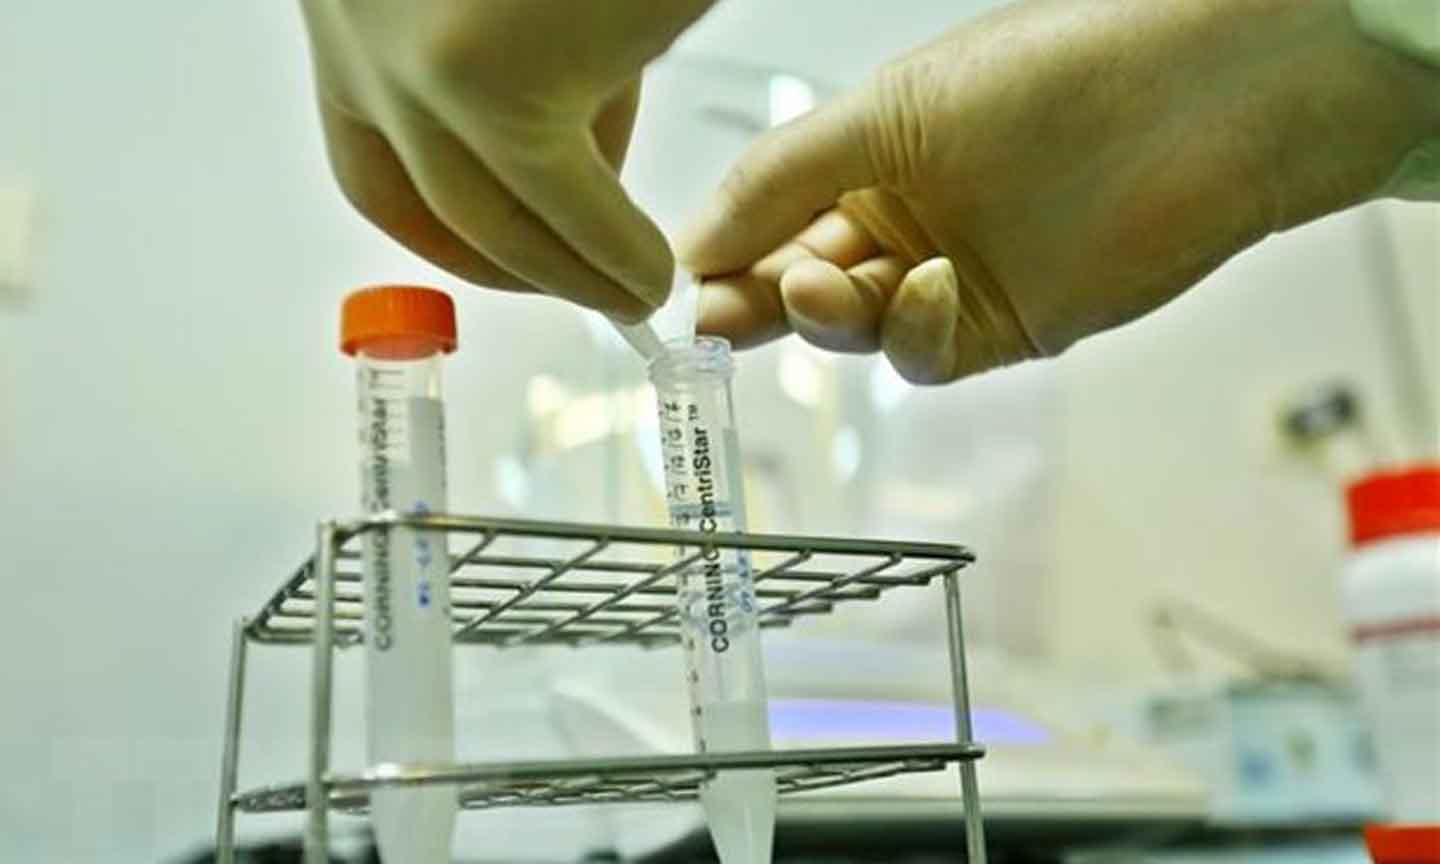  Bán thành phẩm của một loại vắcxin sau quá trình nghiên cứu, điều chế trước khi được tiêm thử trên động vật. (Ảnh: Minh Quyết/TTXVN)